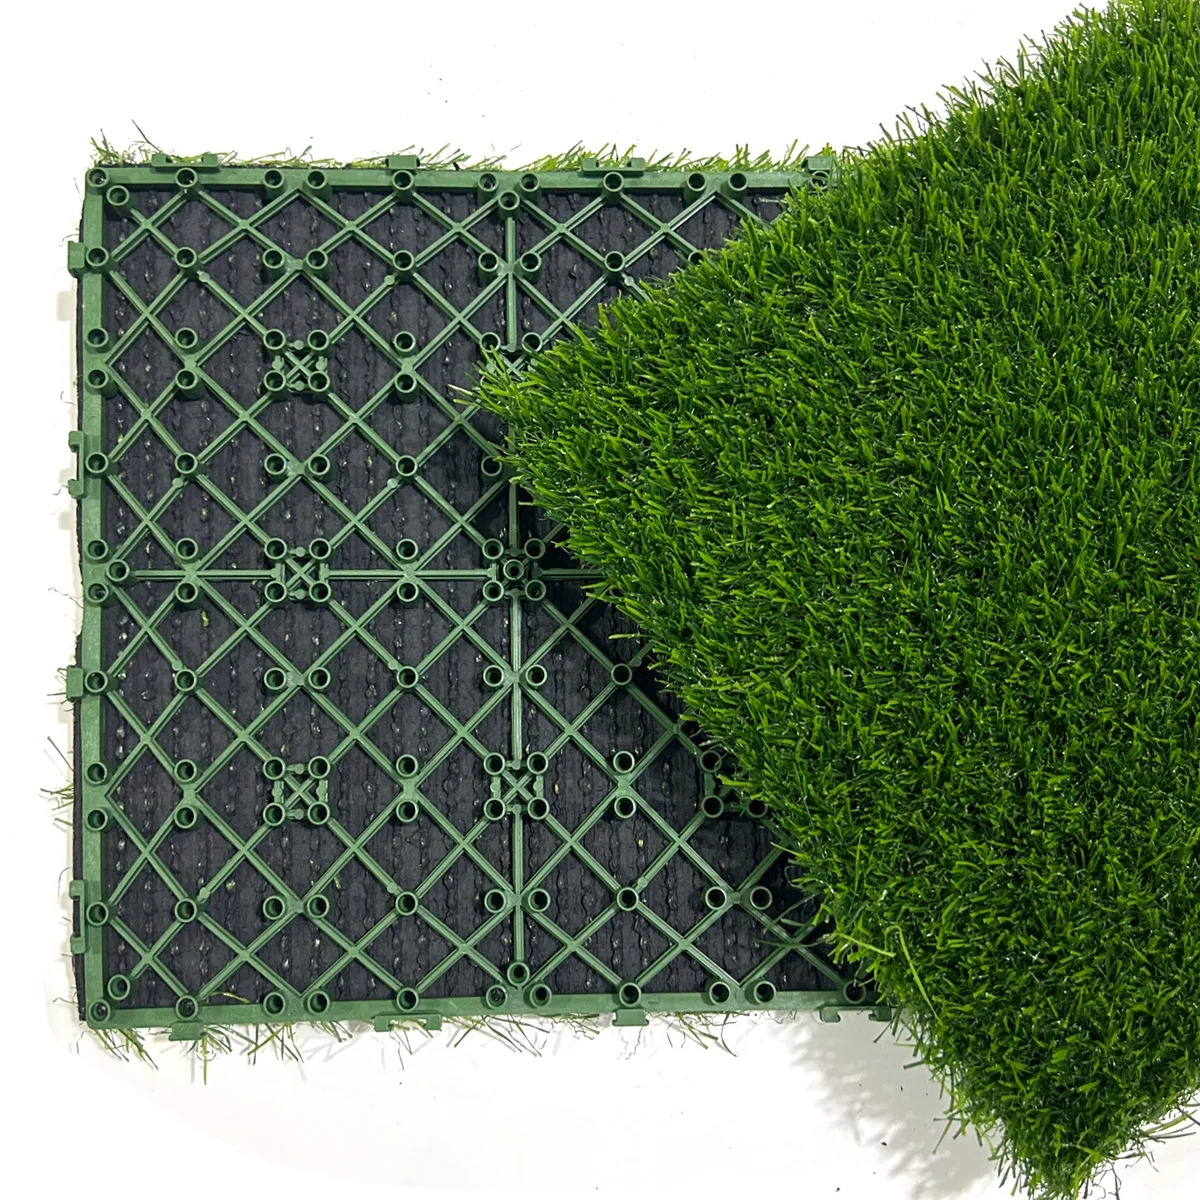 フローティング芝生DIY可動式フリースプライシング、グラウンドシミュレーション人工芝の舗装